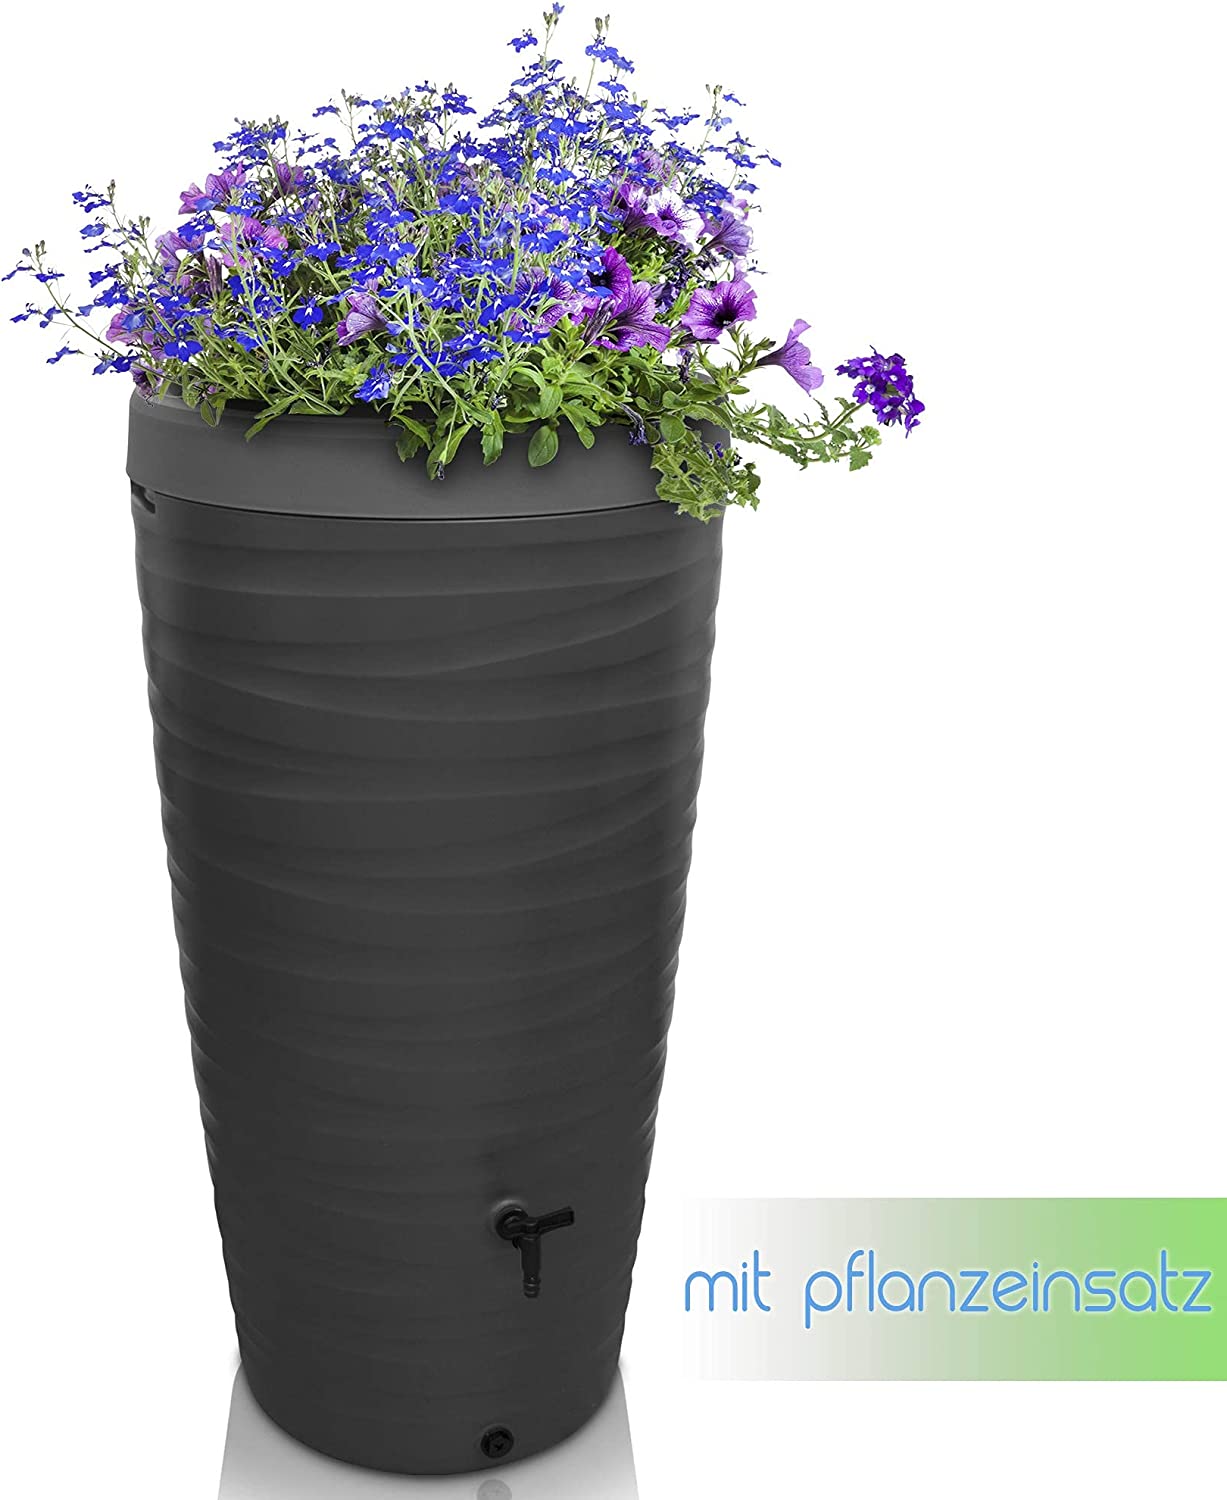 Ein hoher, sich verjüngender schwarzer Blumentopf „YourCasa Regentonne 240 Liter [Wellendesign]“ mit blühenden blauen und violetten Blumen und einem Zapfen in Bodennähe, mit der Aufschrift „mit Pflanzeinsatz“, was auf eine Pflanzeinsatzfunktion mit nach yourcasa-de hinweist.